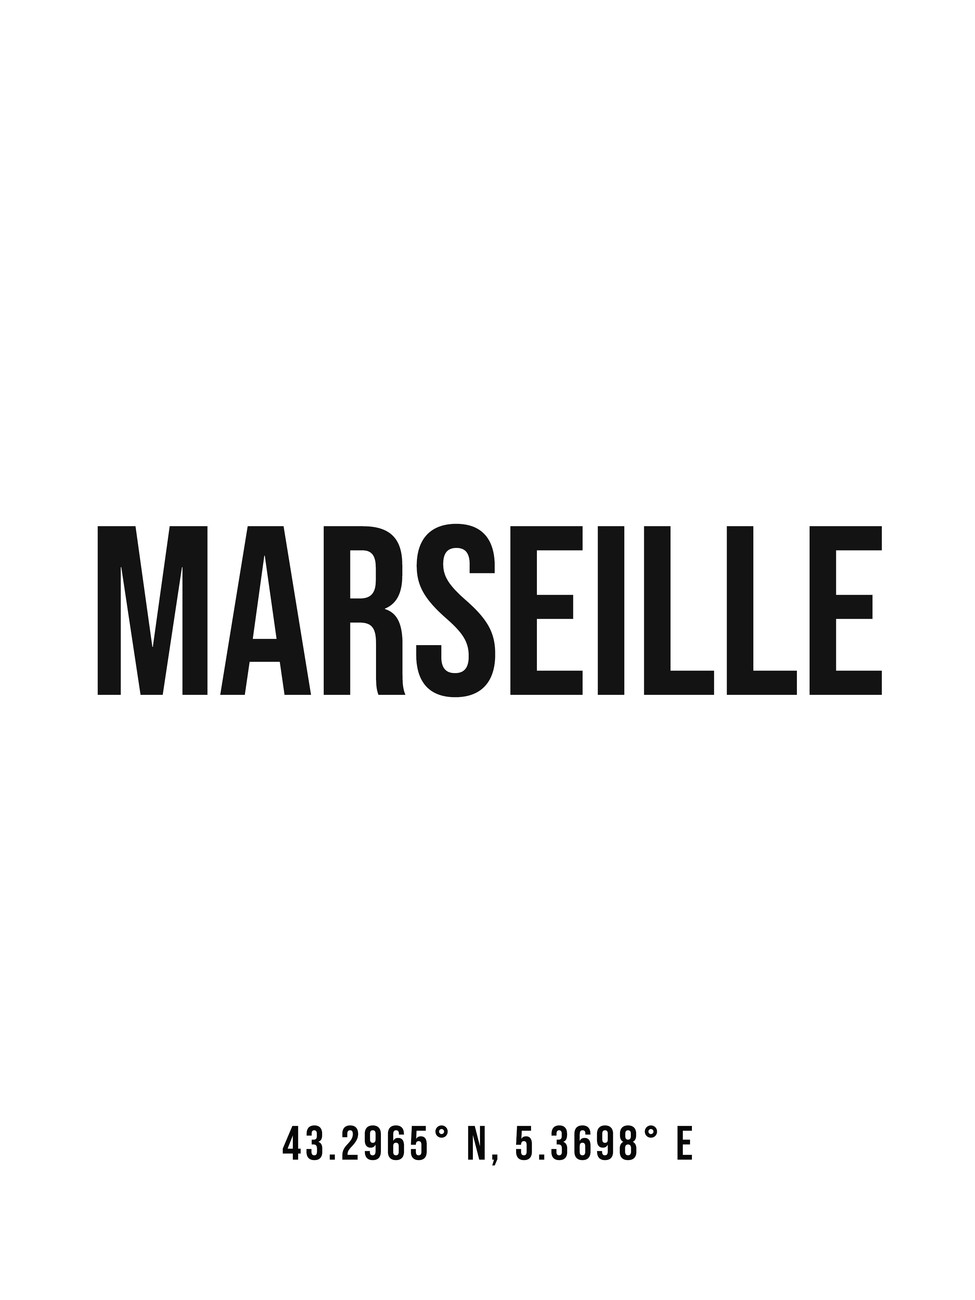 Illustration Marseille simple coordinates